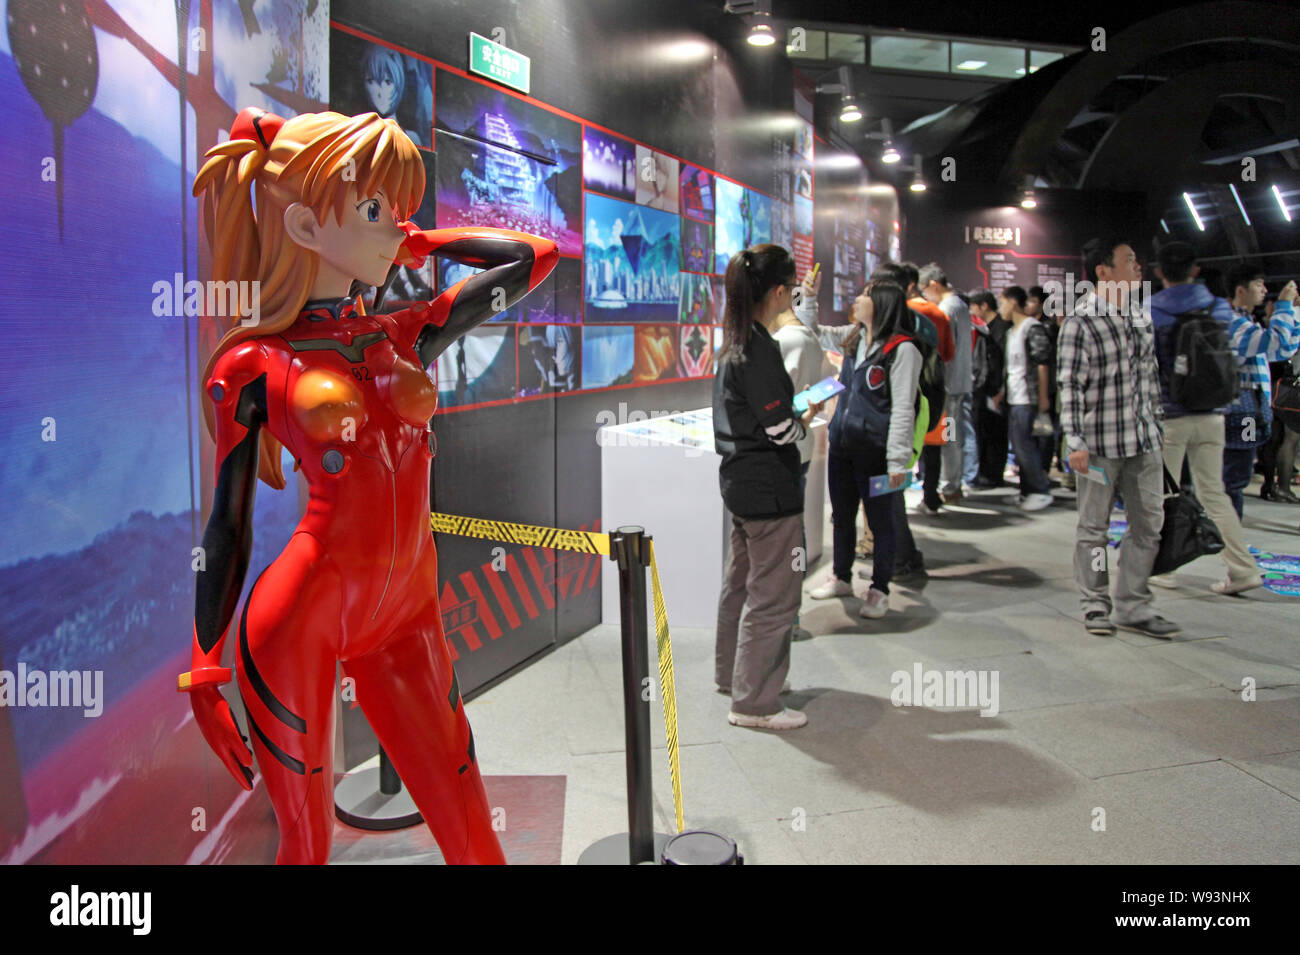 Eine lebensgroße Modell von Asuka Langley Soryu, eine fiktive Figur aus der Neon Genesis Evangelion anime serie, ist während der EVA Expo am angezeigt Stockfoto